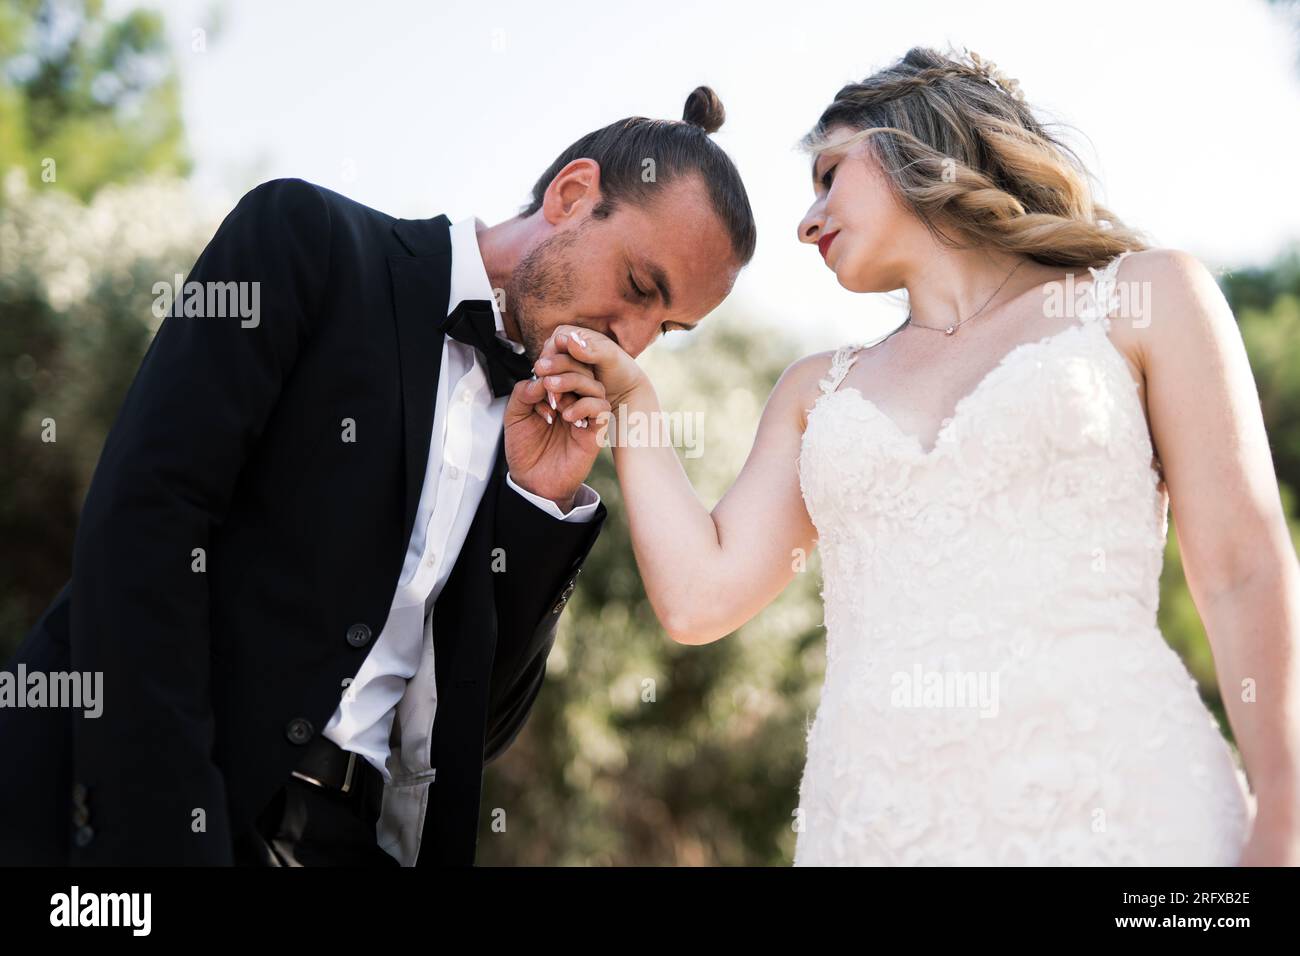 Ein charmanter Bräutigam küsst die Hand der Braut Stock Photo